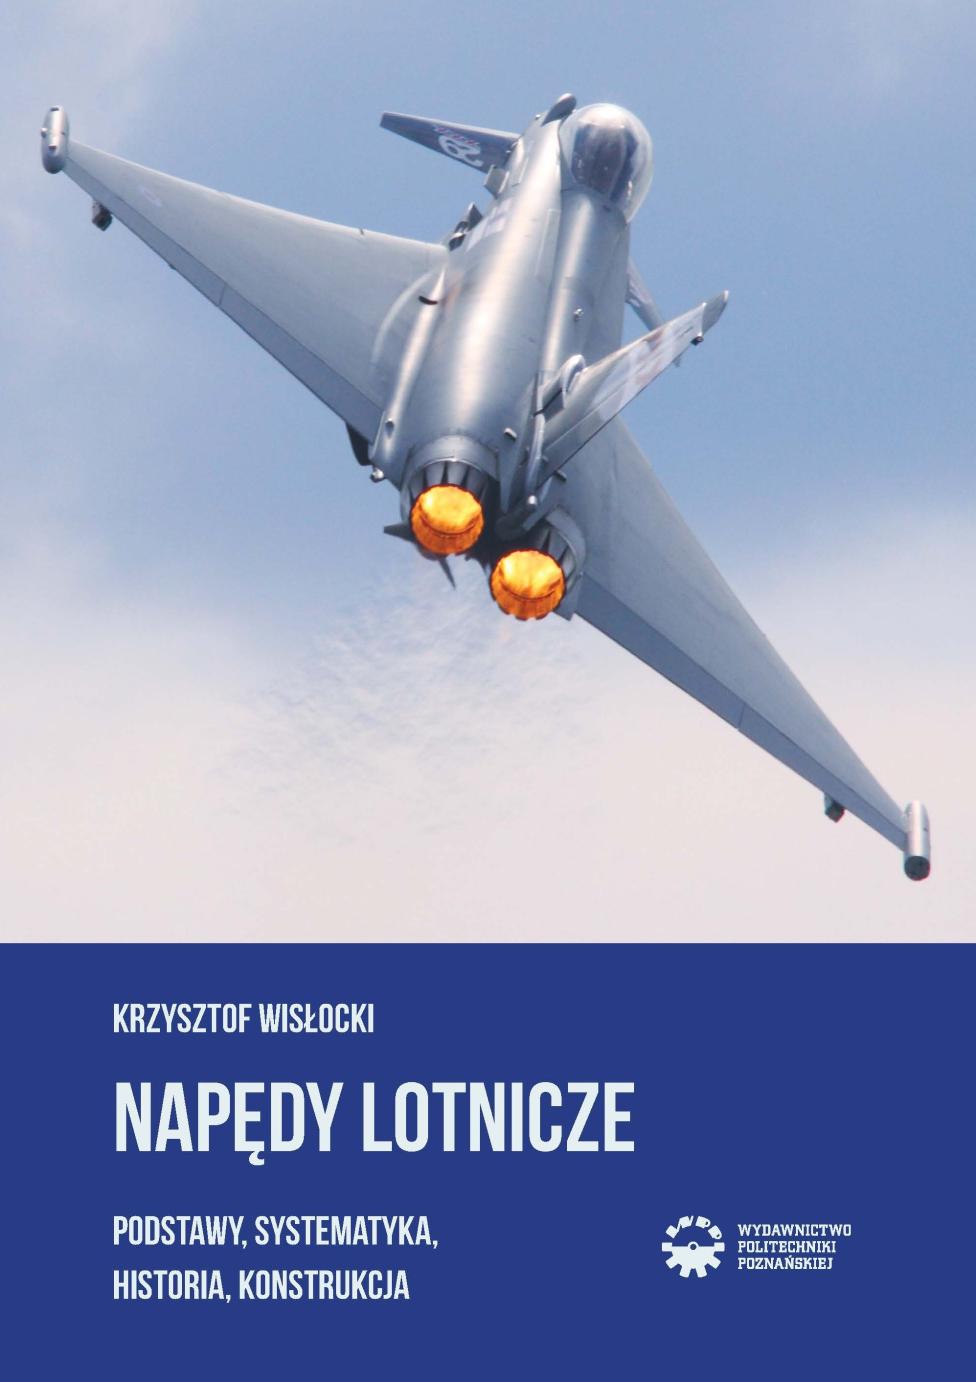 Książka "Napędy lotnicze. Podstawy, systematyka, historia, konstrukcja" (fot. Wydawnictwo Politechniki Poznańskiej)